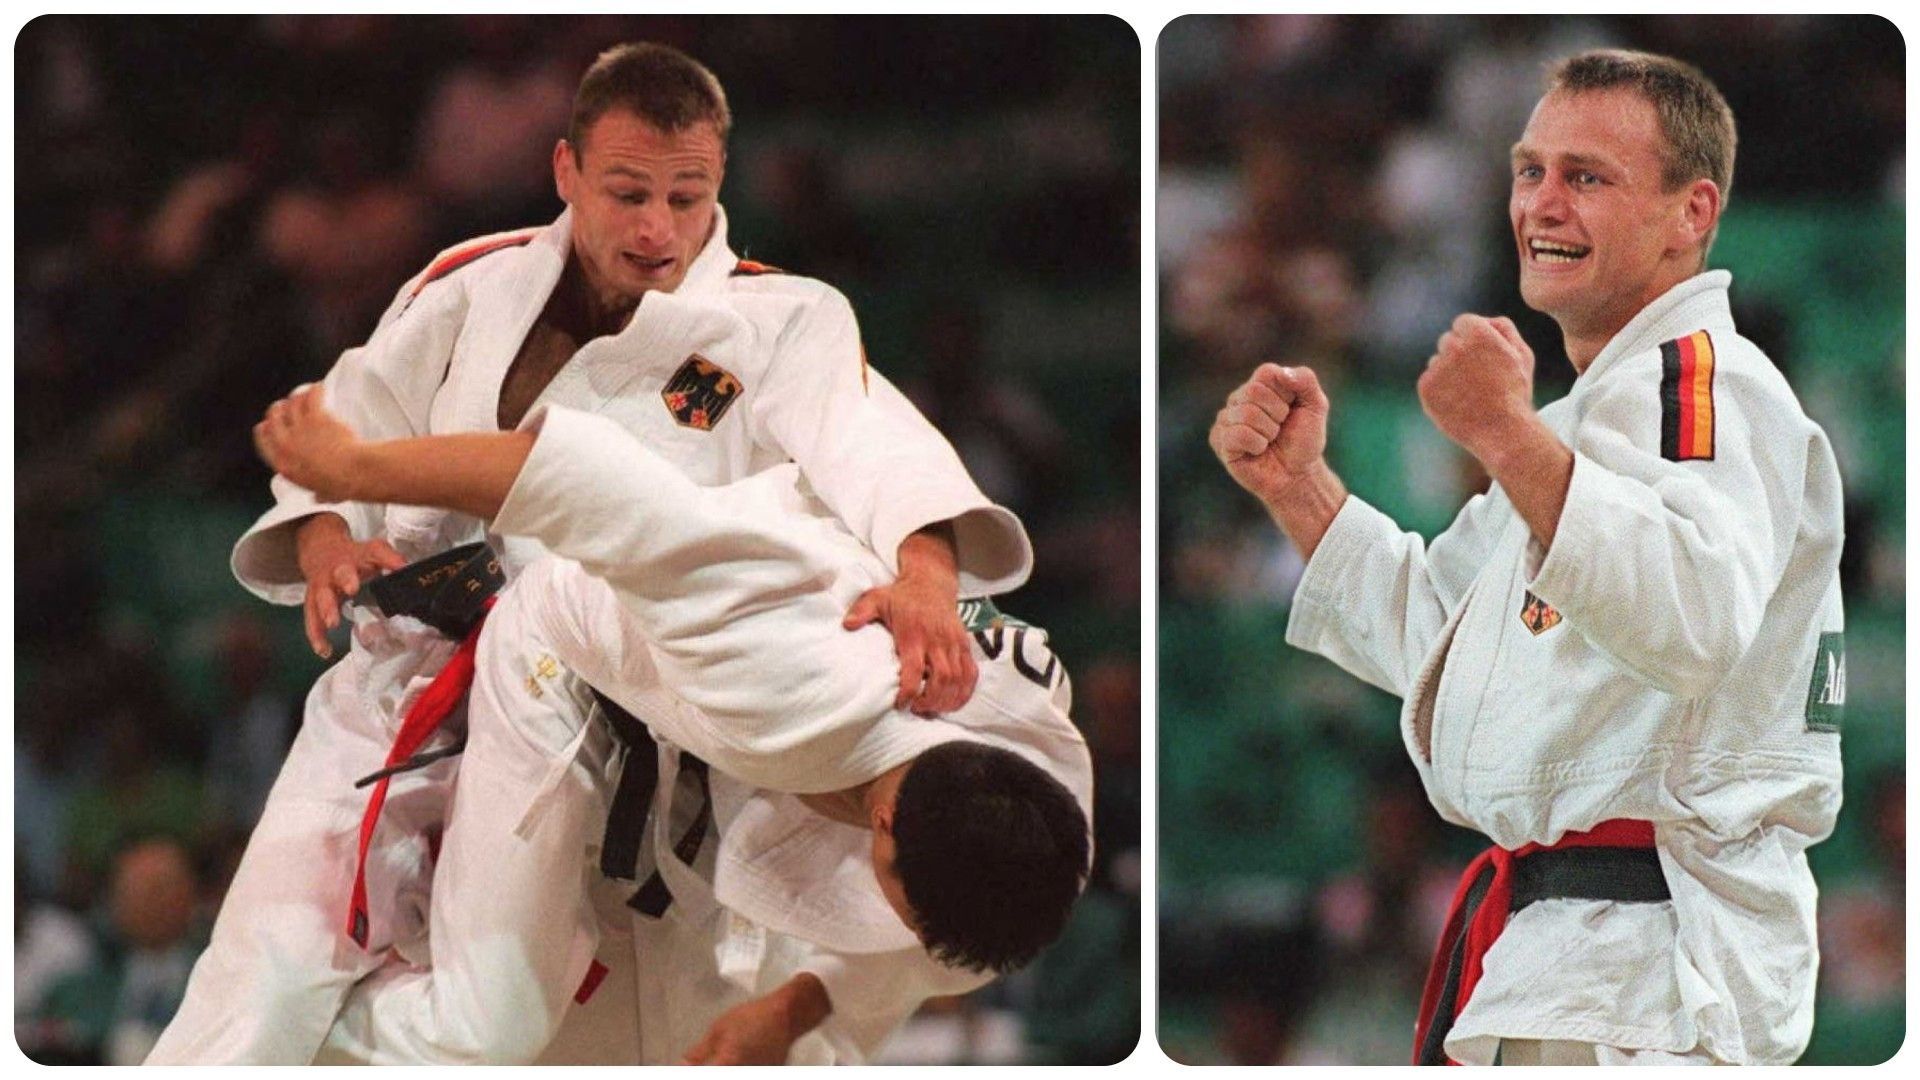 Après le bronze à Barcelone, l’Allemand Udo Quellmalz a décroché le titre olympique aux JO d’Atlanta en 1996.